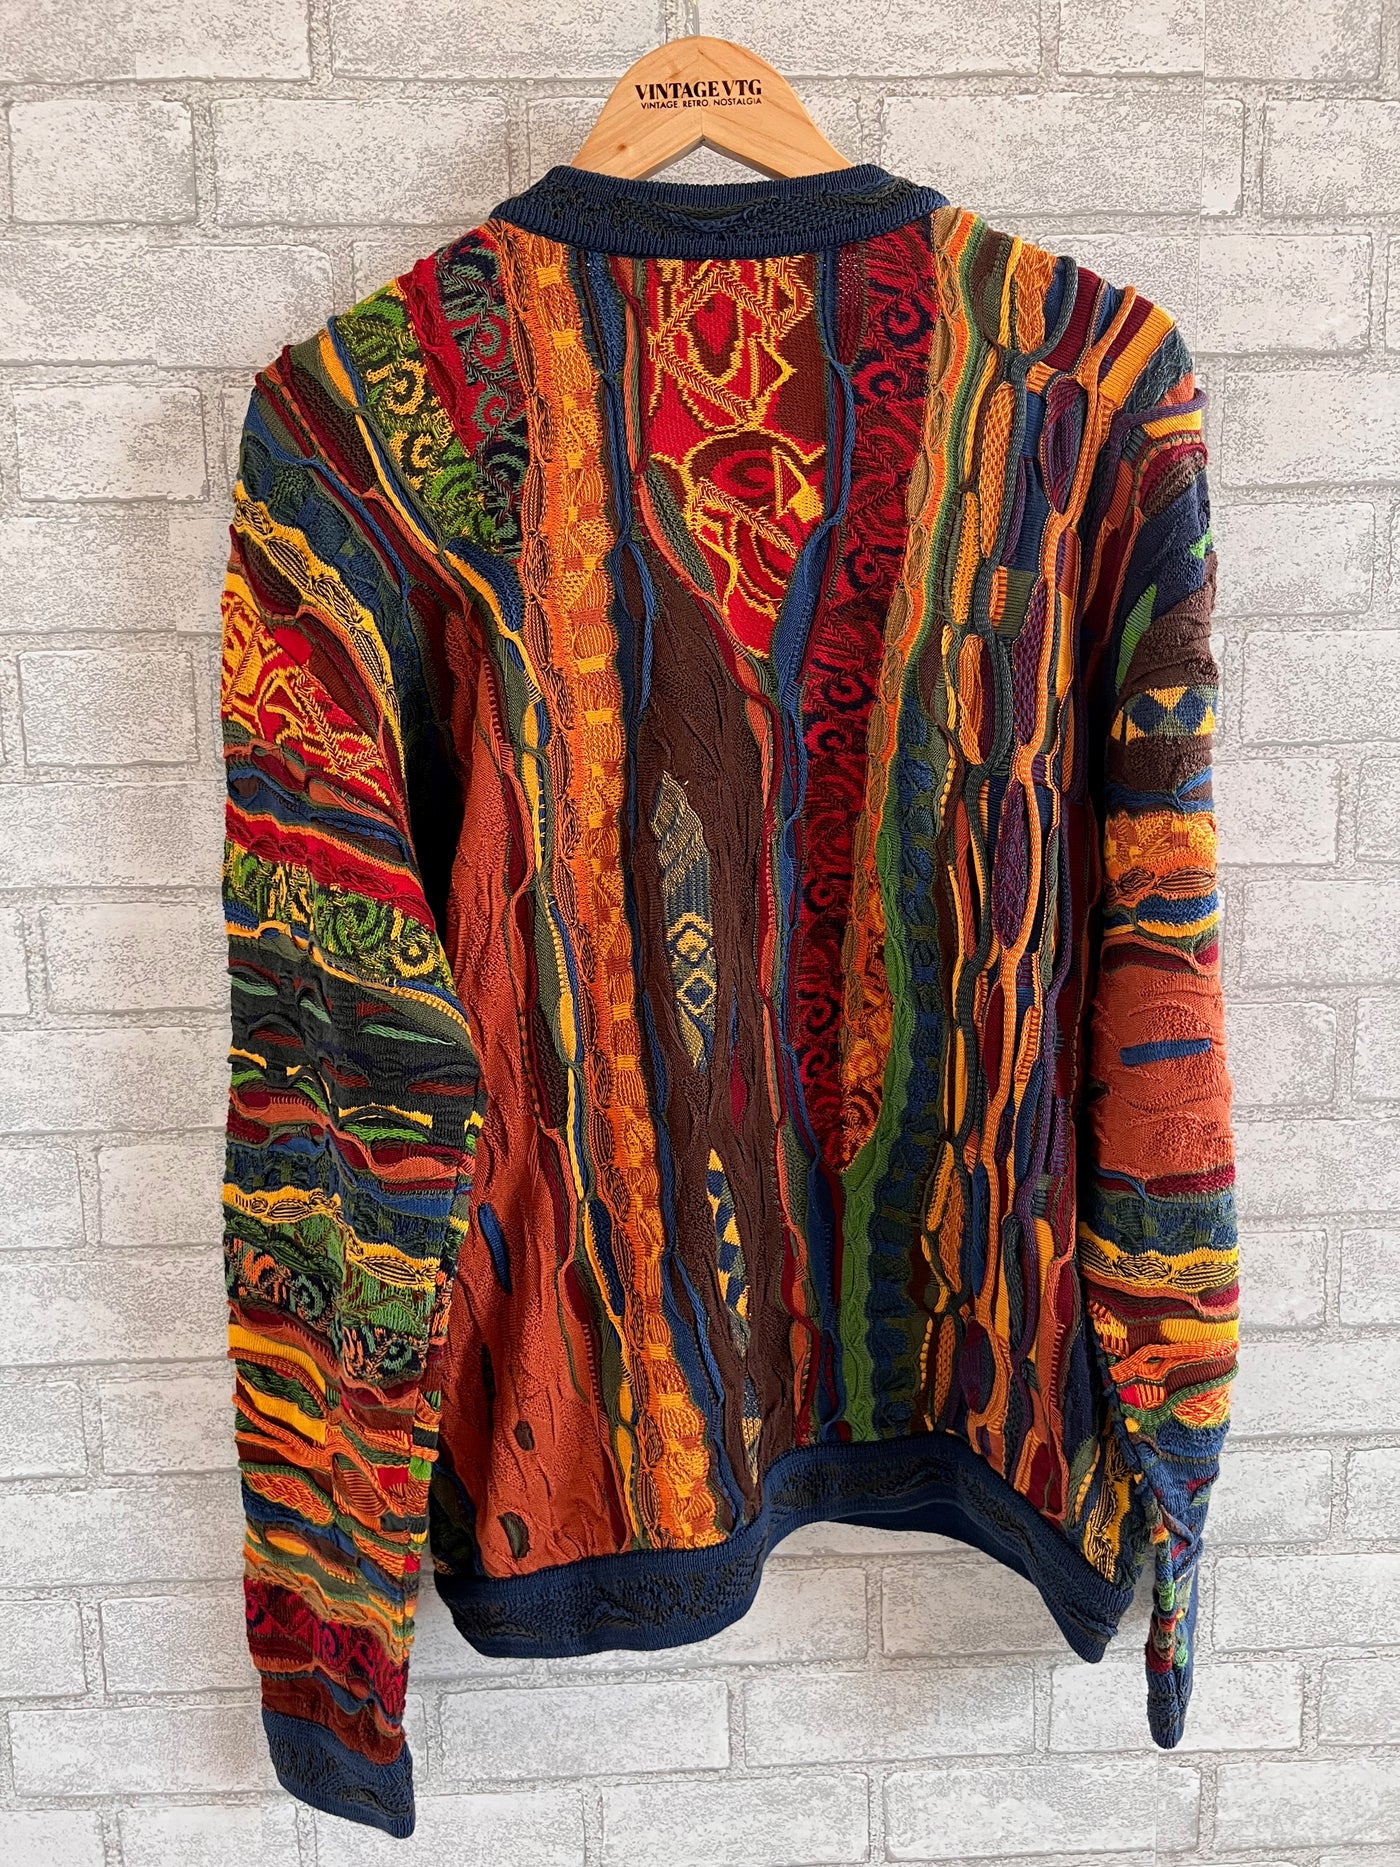 Vintage Coogi Multi Color Cotton Sweater